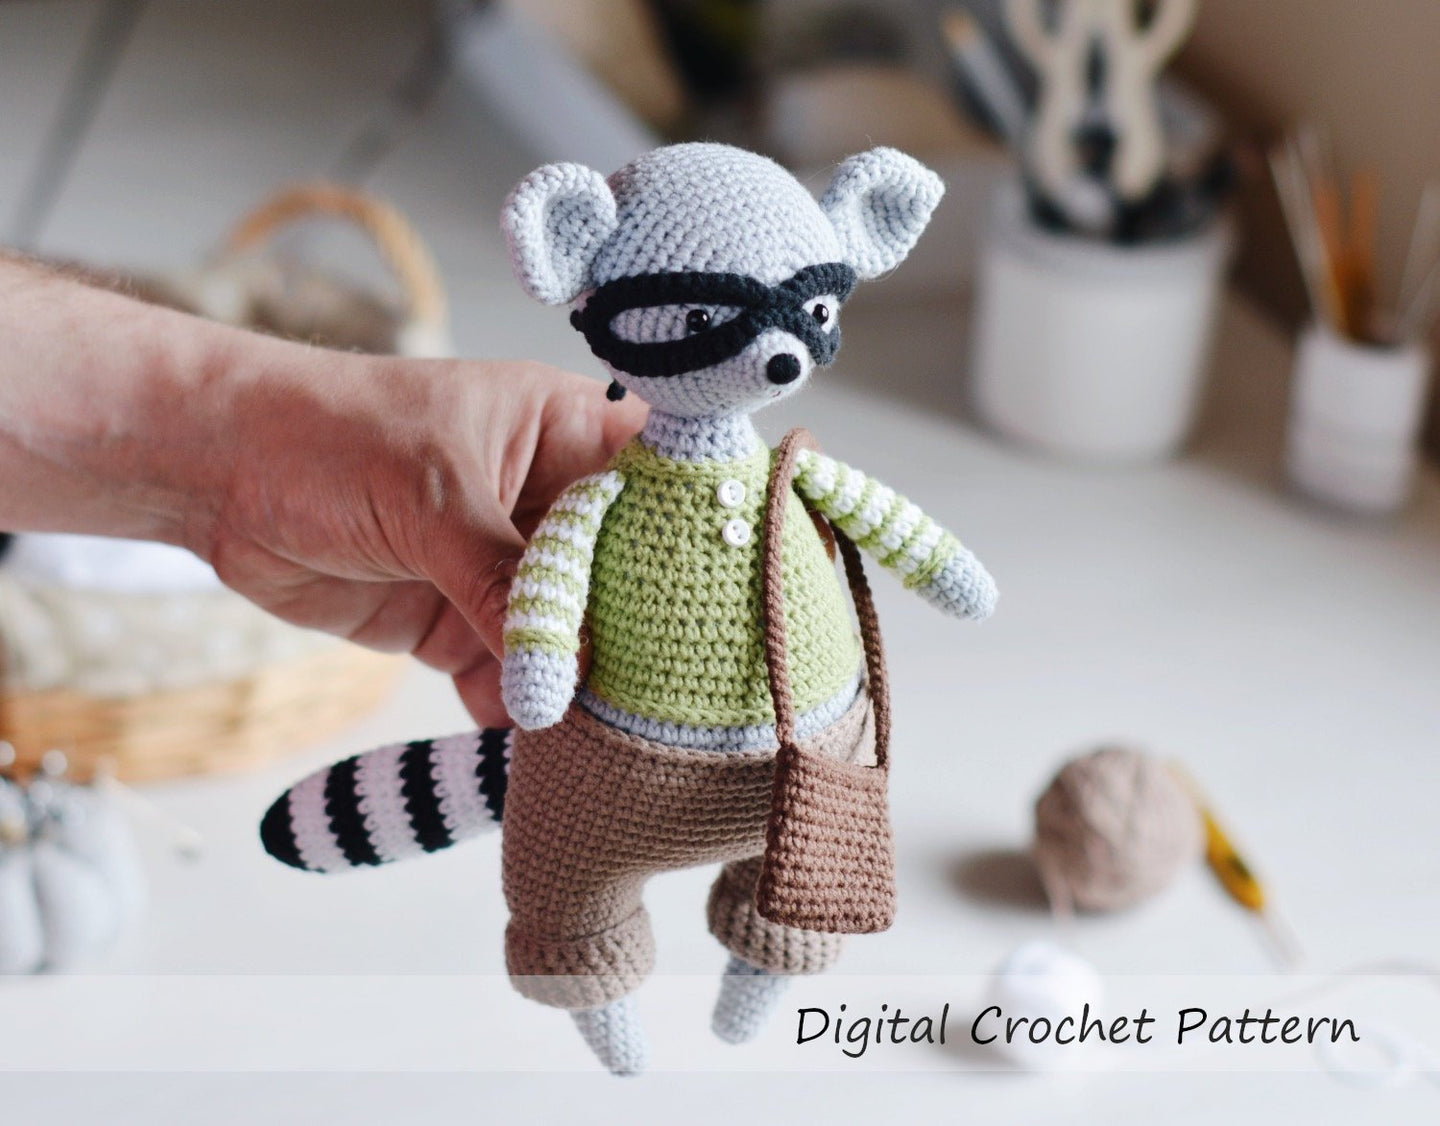 Crochet pattern for a Mouse & Raccoon amigurumi - Firefly Crochet